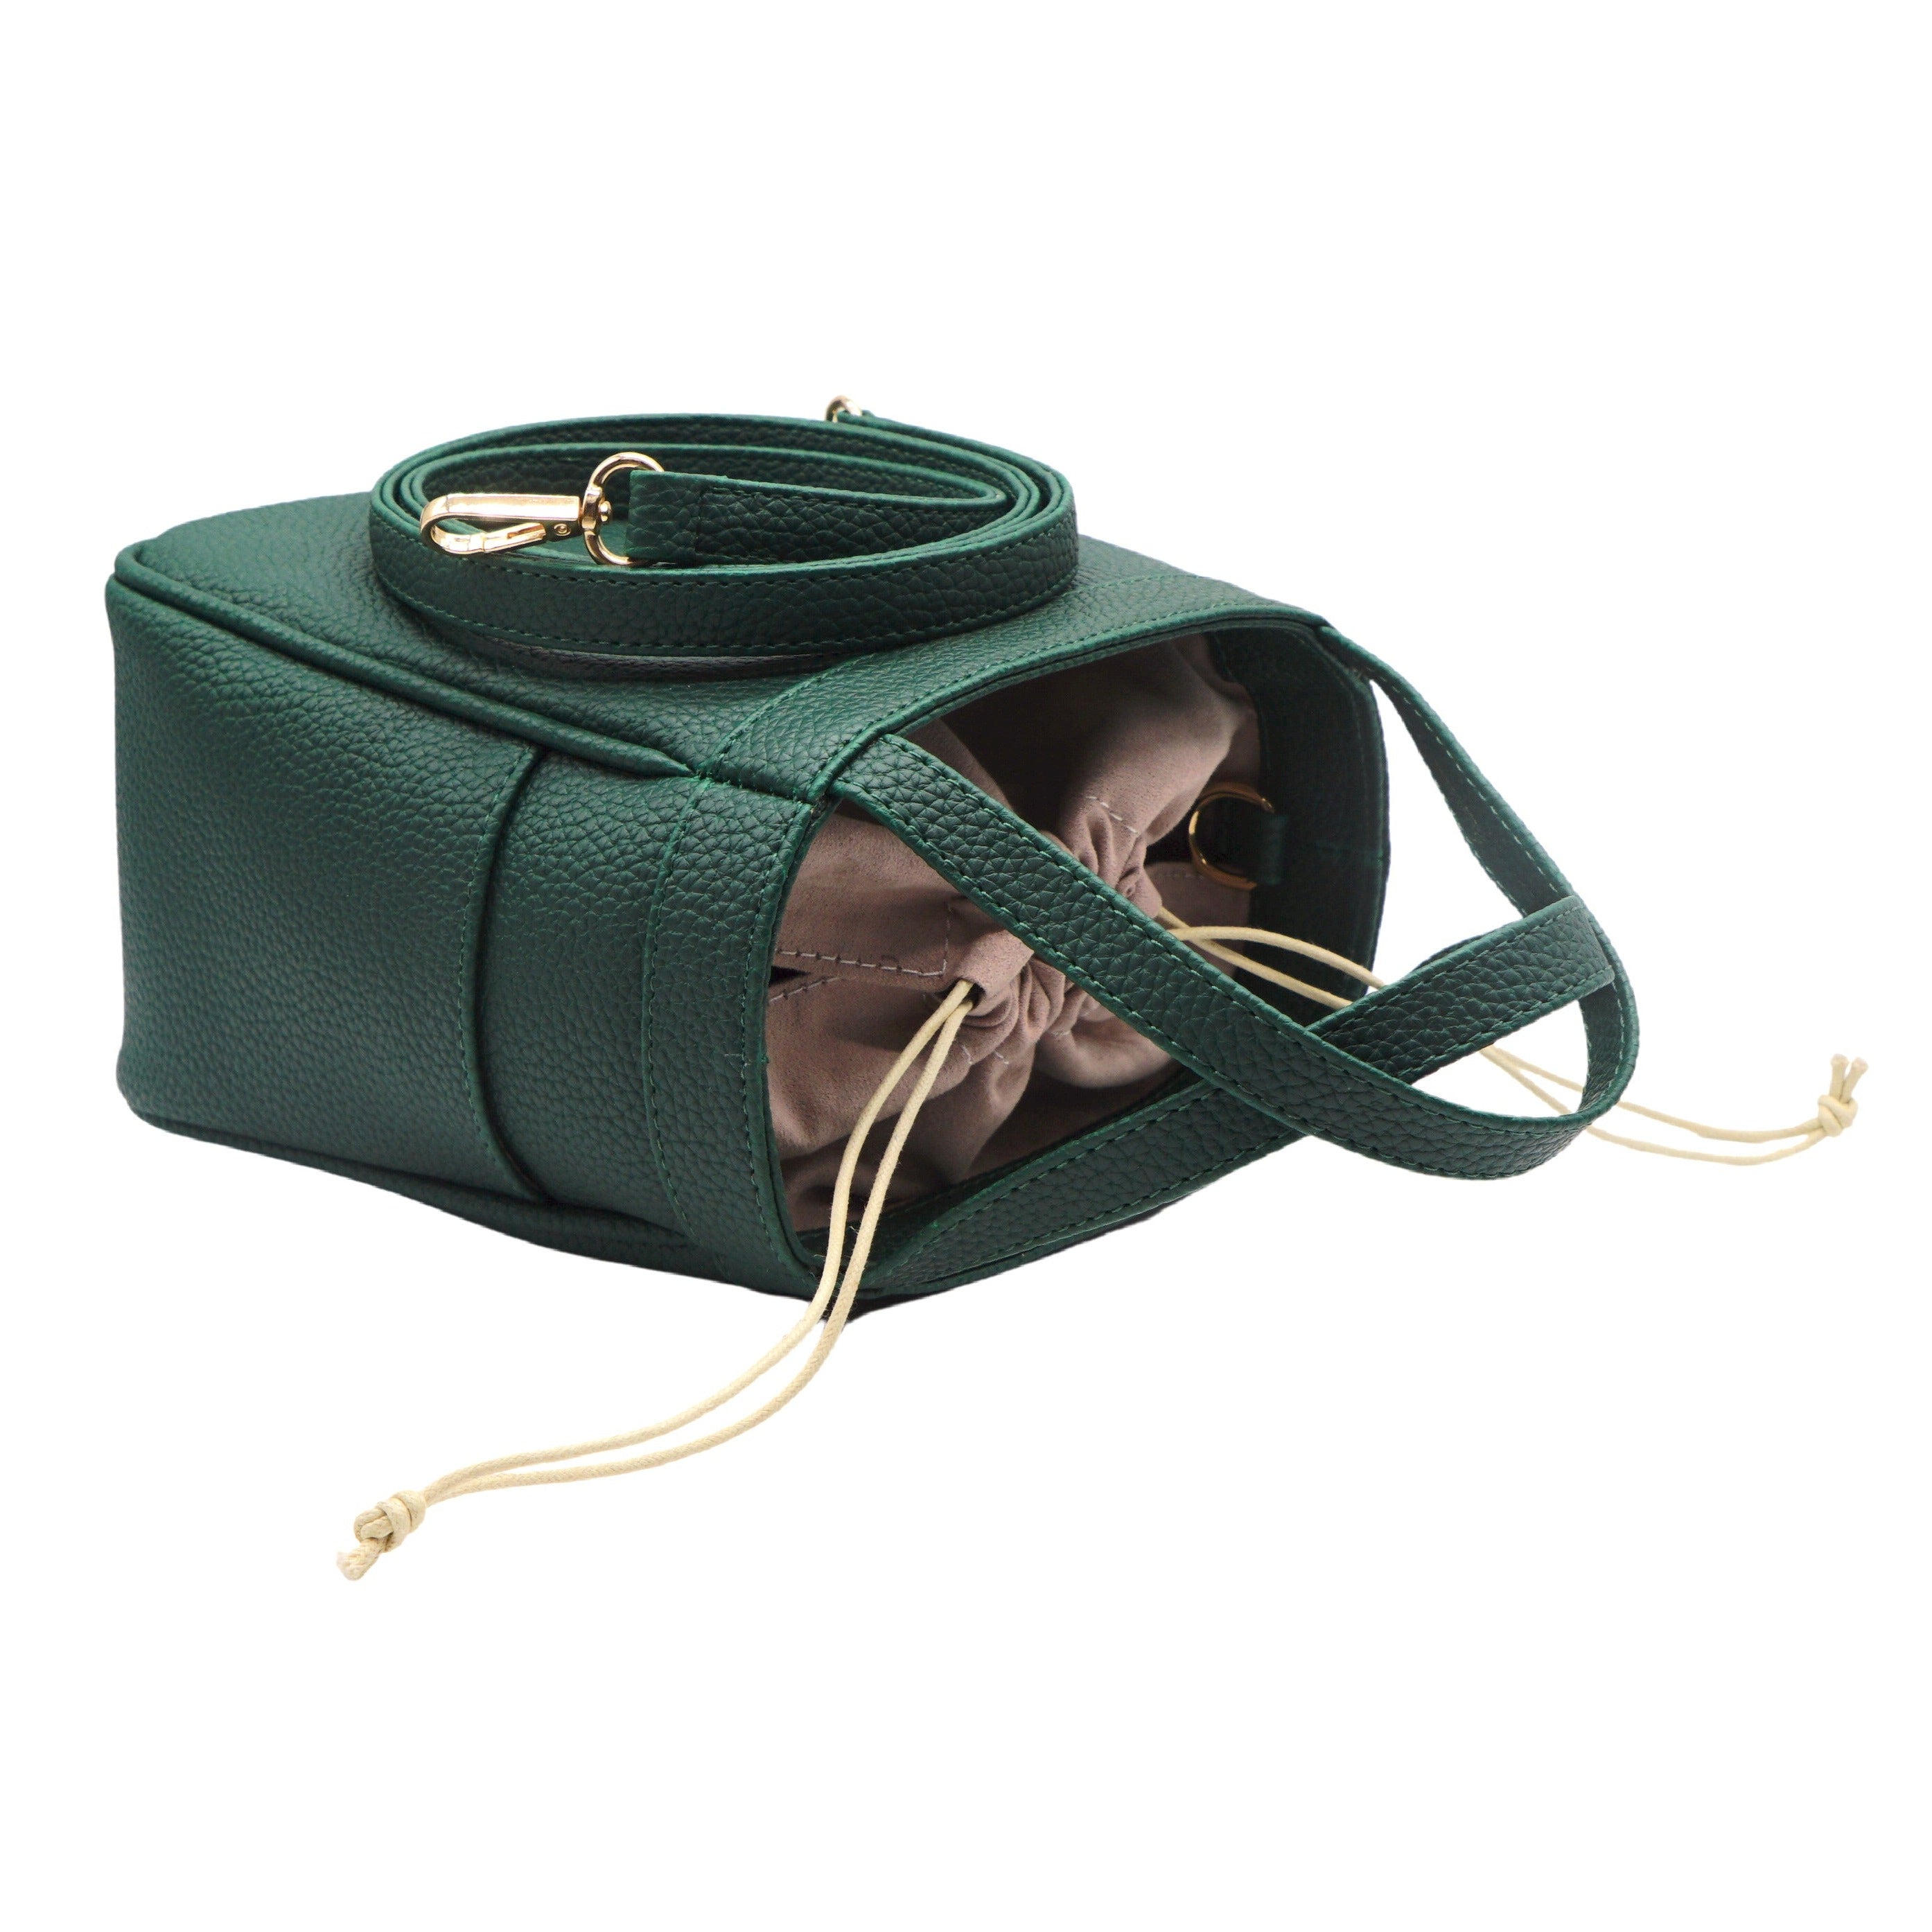 Jolie Green Handbag